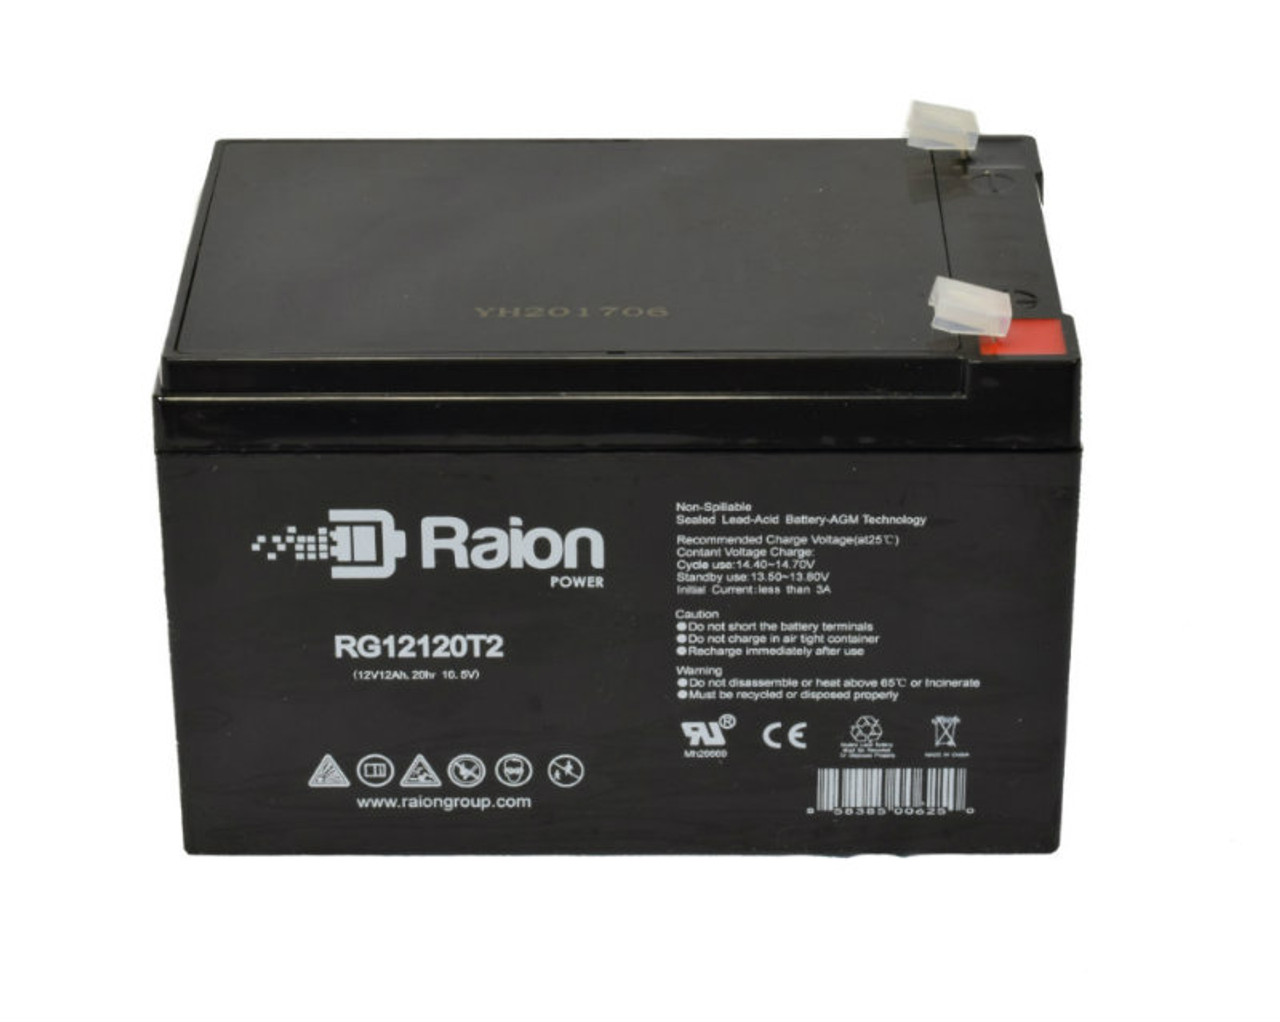 Raion Power RG12120T2 SLA Battery for Wilson Portable Standard